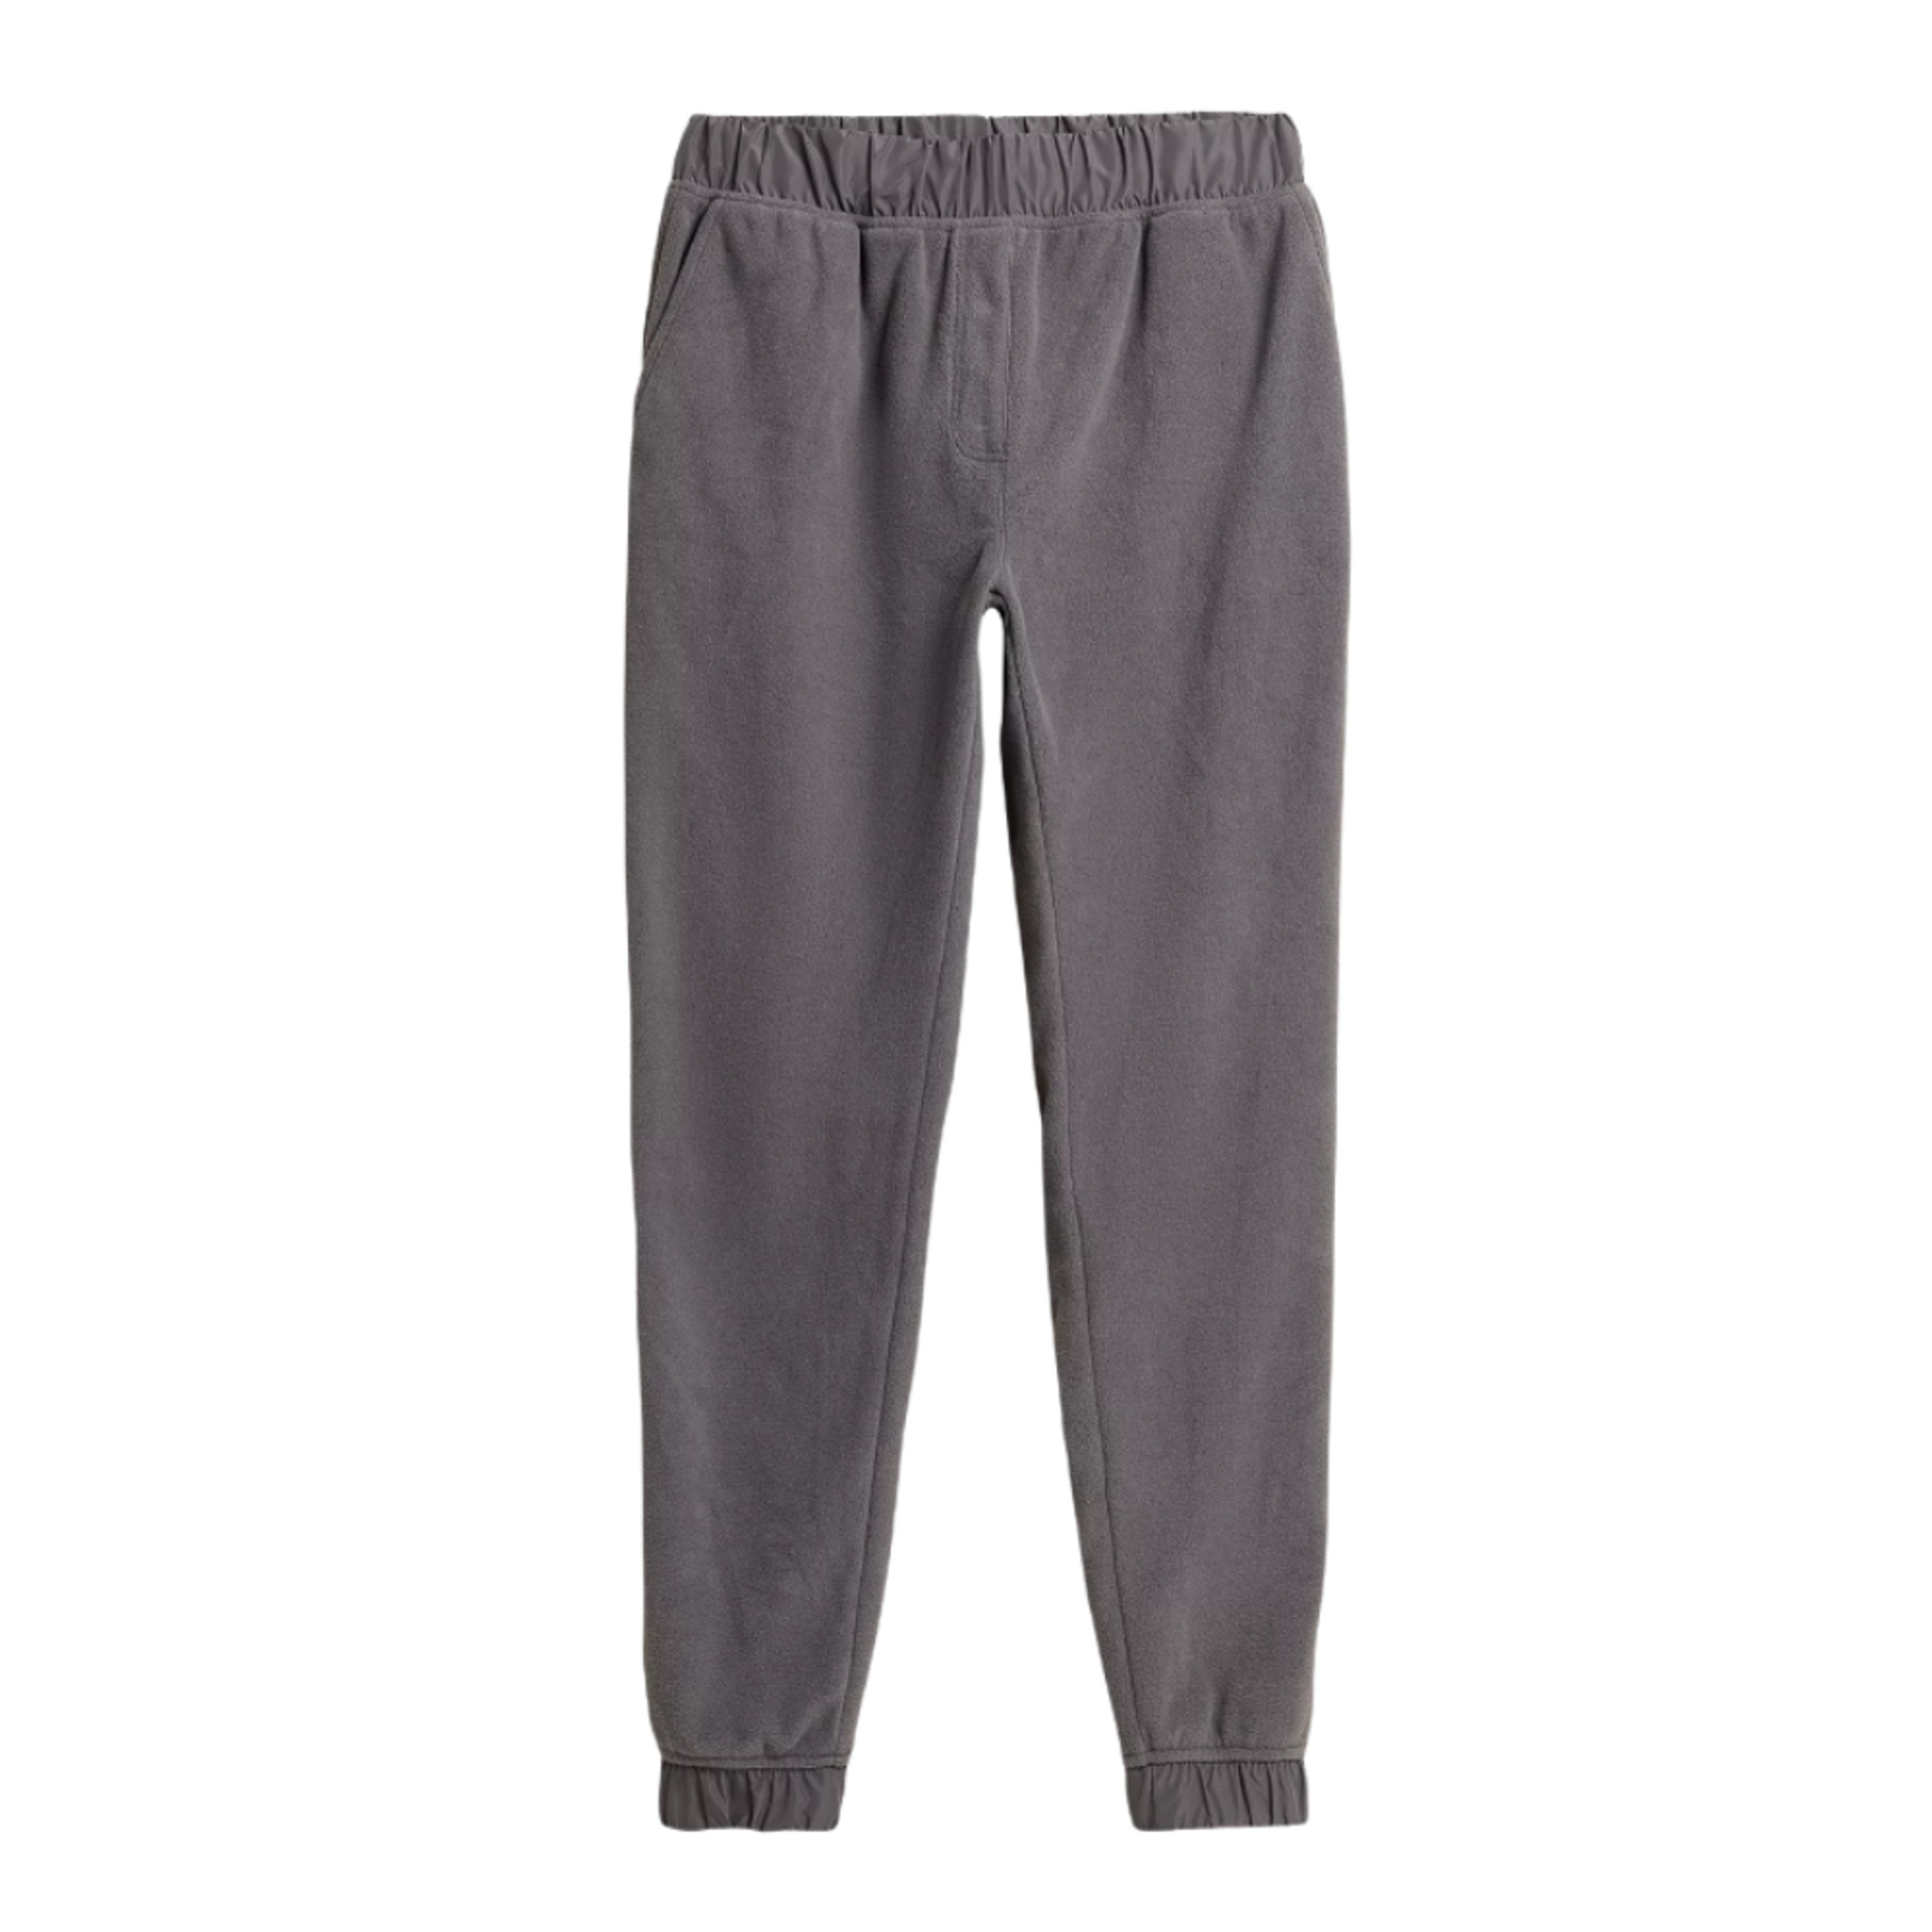 Pantalones 4f Clothes H4z21-spdd010